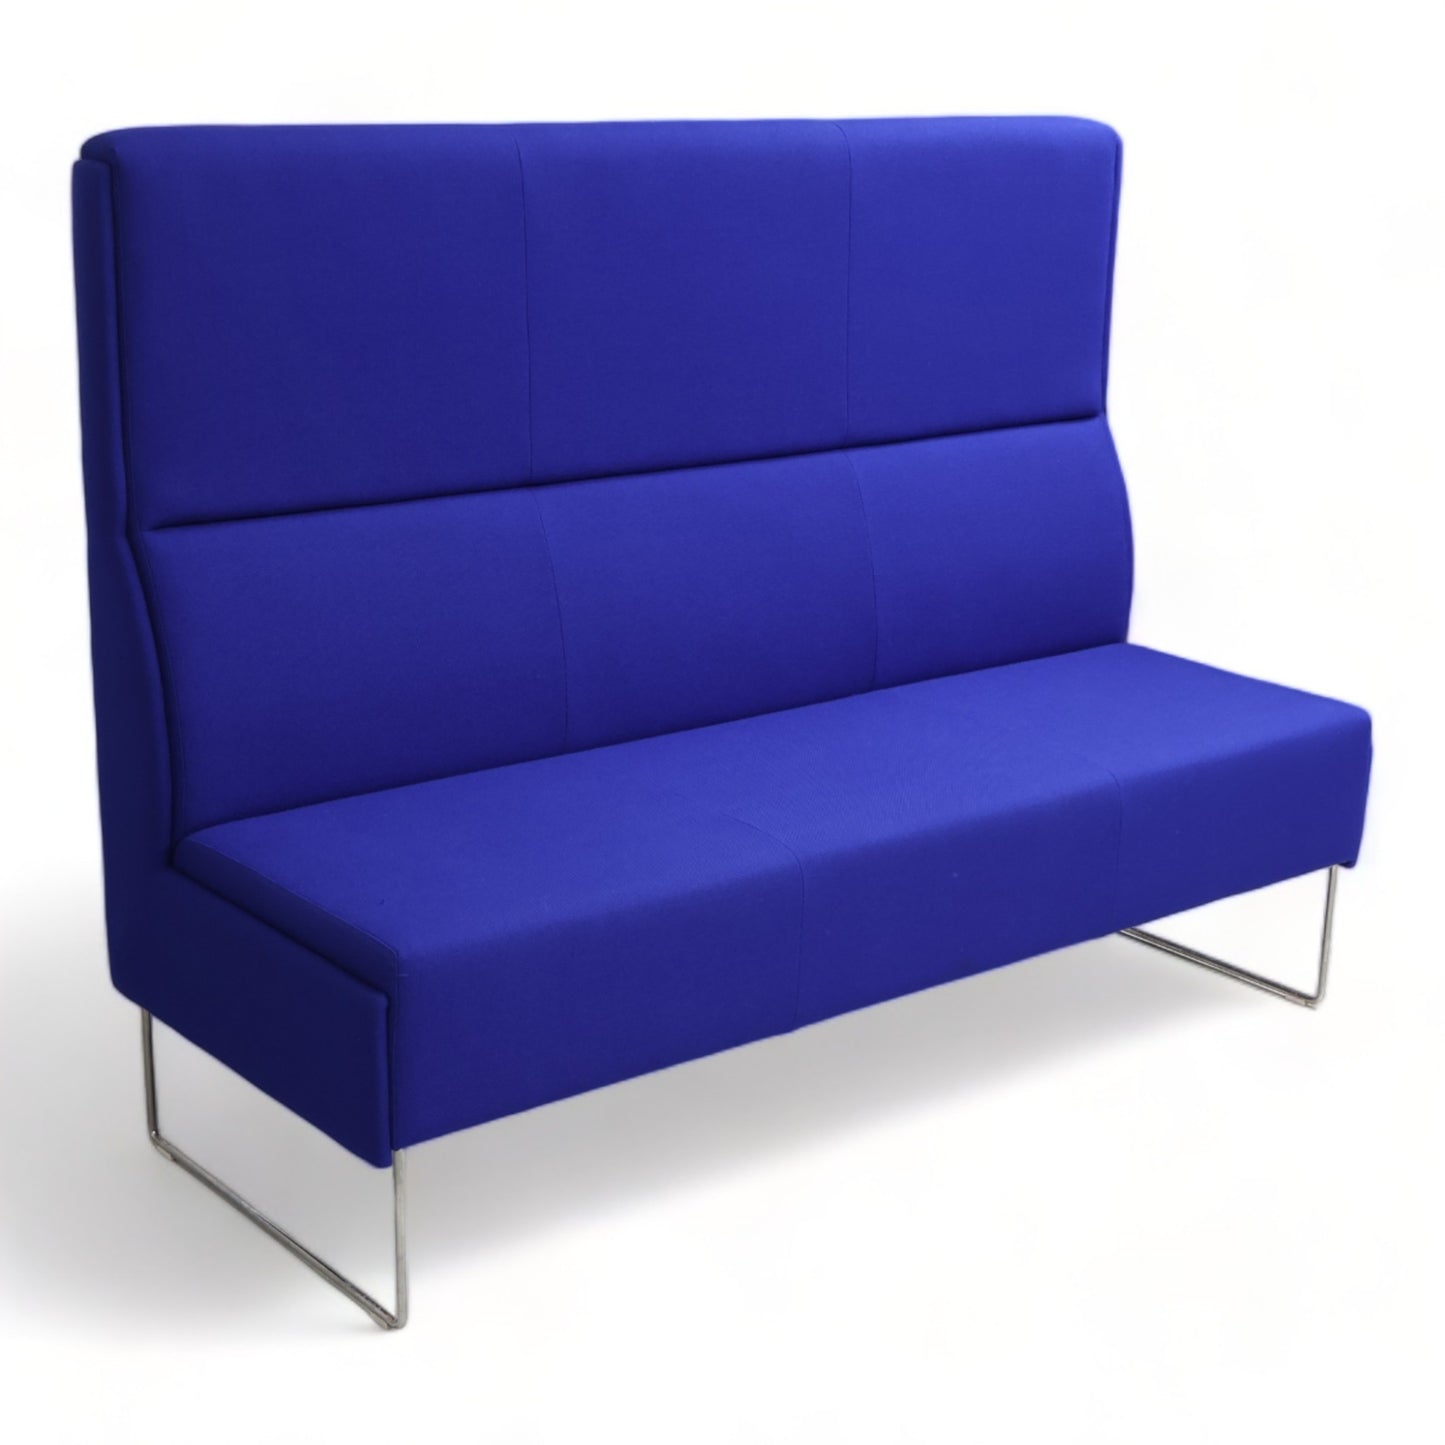 Nyrenset | Blå VAD Pivot 3-seter loungesofa